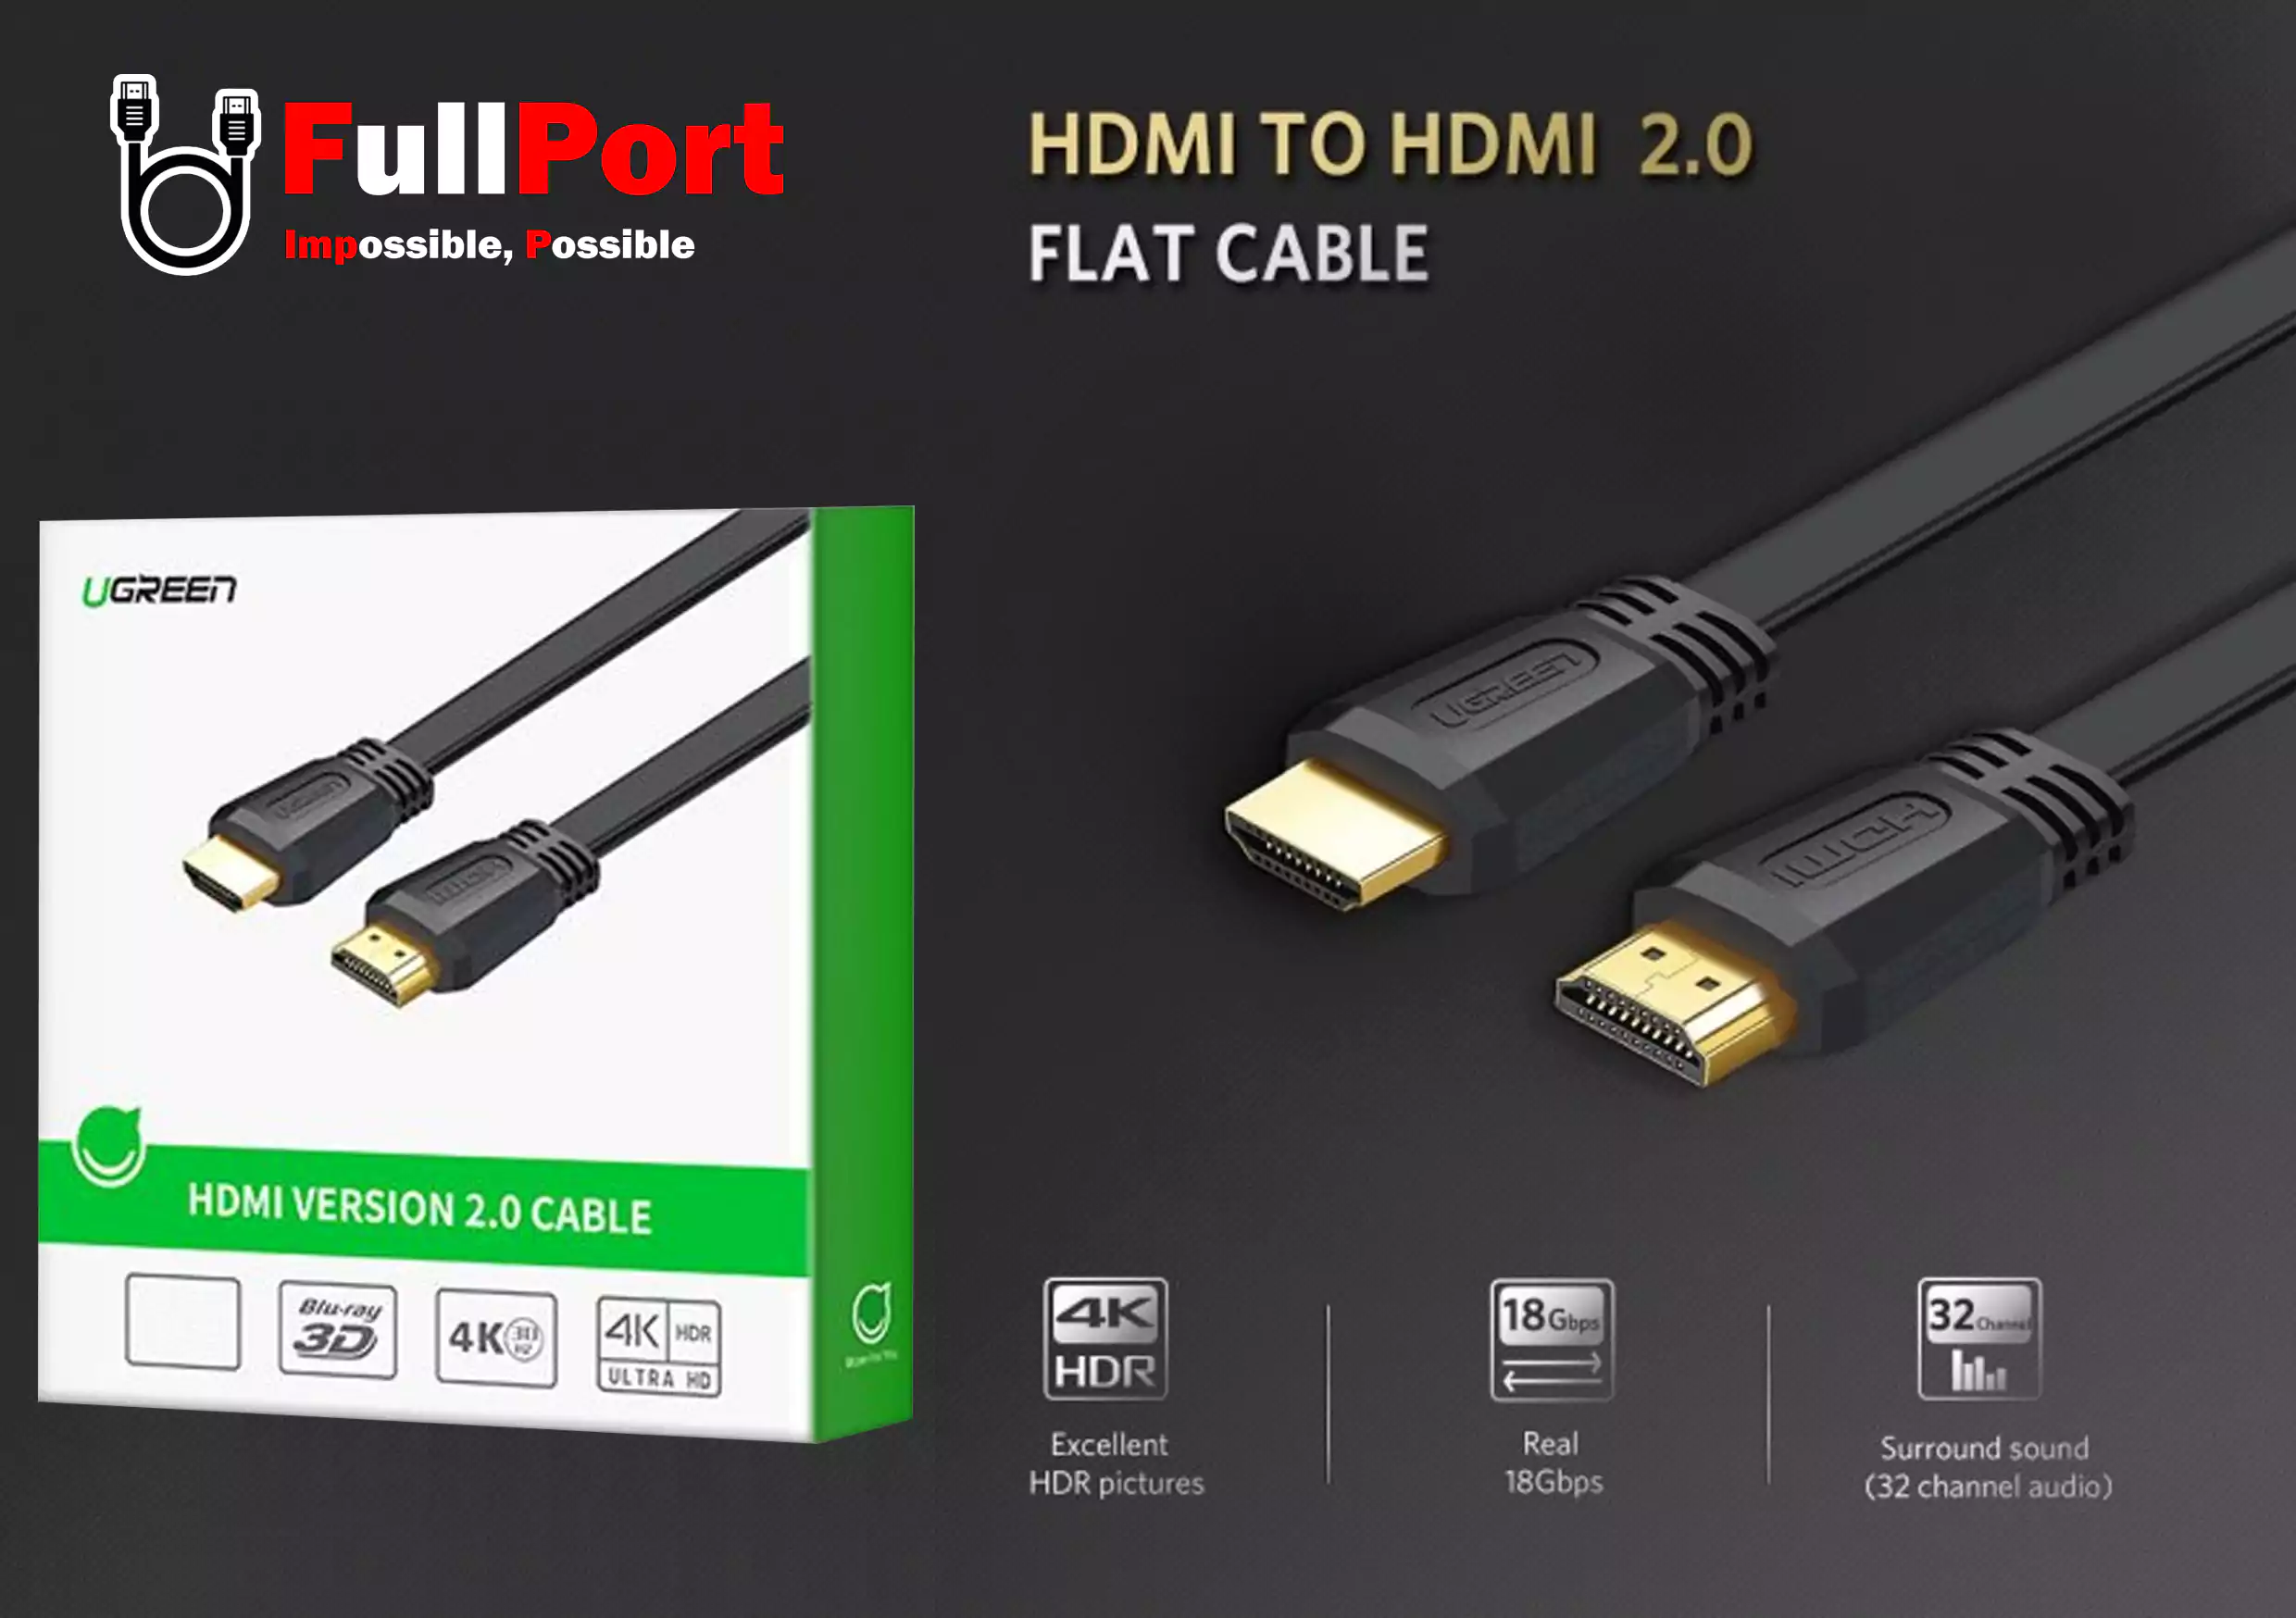 خرید اینترنتی کابل HDMI یوگرین | Ugreen با گارانتی تست و تضمین اصالت کالا از فروشگاه اینترنتی فول پورت